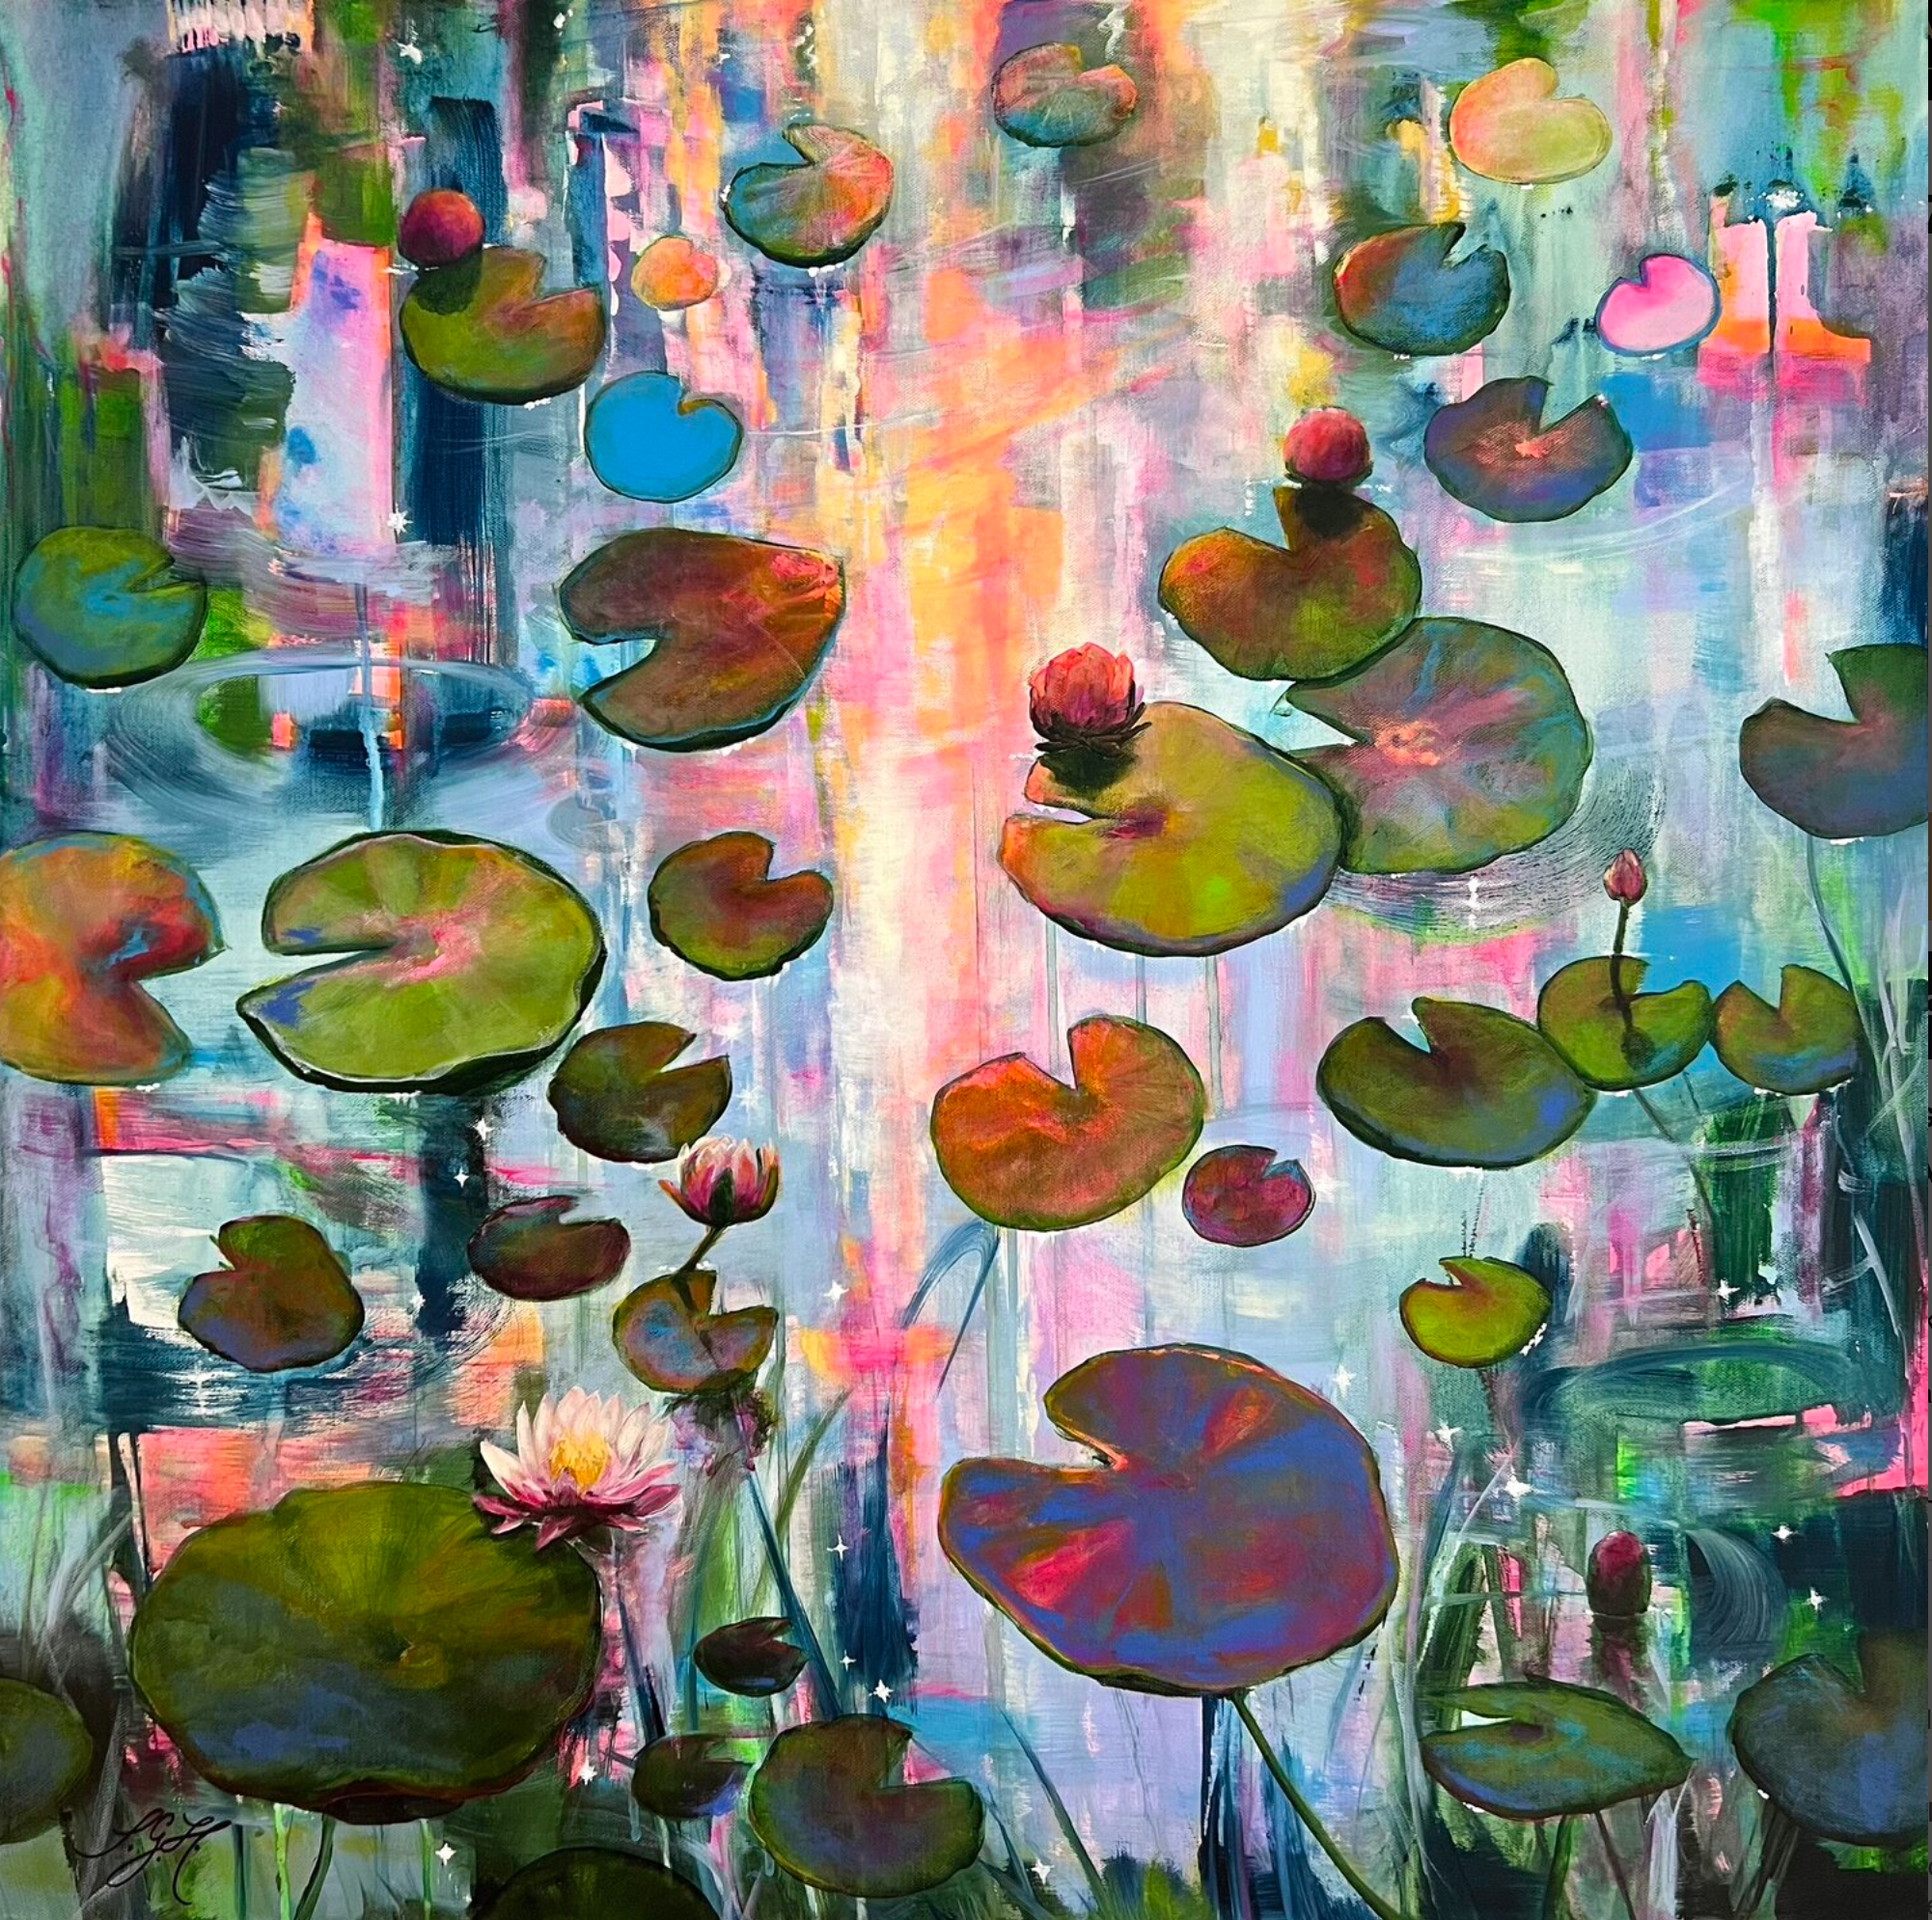 El colorido cuadro de Sandra Gebhardt-Hoepfner "Always Waterlilies 7" muestra nenúfares flotando sobre el agua en suave movimiento bajo un sol que ya se está poniendo ligeramente. Los colores son rosa neón, azul claro, azul oscuro, verde oscuro, verde claro, amarillo, turquesa y naranja claro.